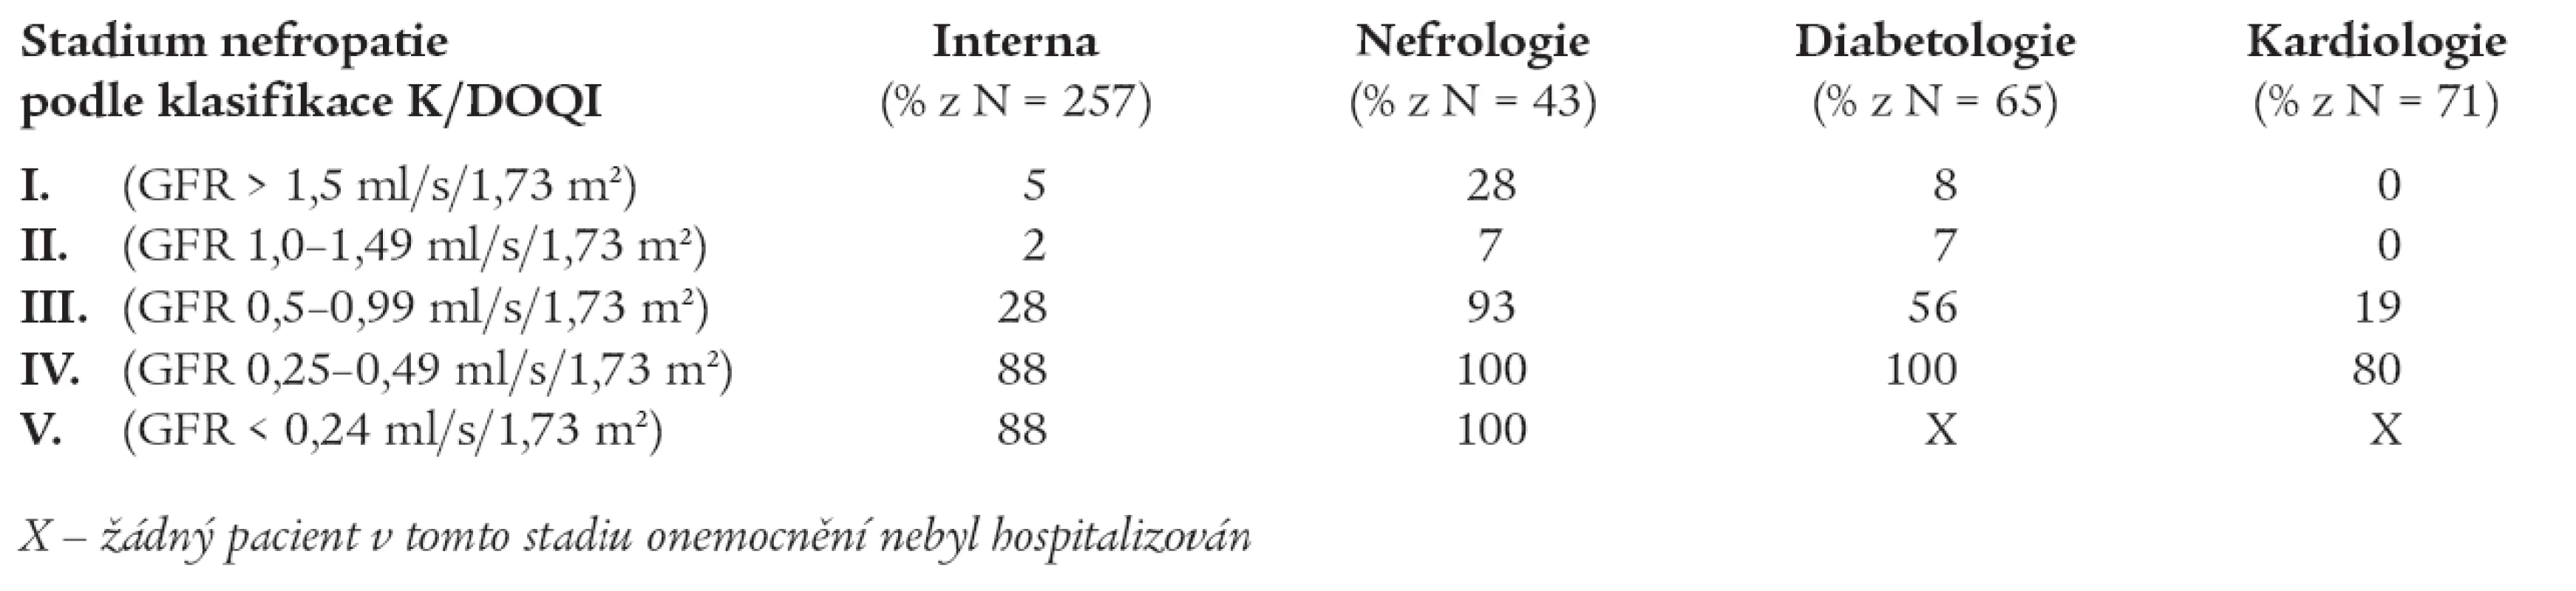 Relativní procento pacientů se správně uvedenou diagnózou chronické nefropatie a/nebo chronické poruchy glomerulární filtrace u nemocných ze všech hospitalizovaných pacientů v definovaném období na interních lůžcích (N = 257), lůžcích nefrologie (N = 43), diabetologie (N = 65) a na standardních lůžcích kardiologické kliniky (N = 71).